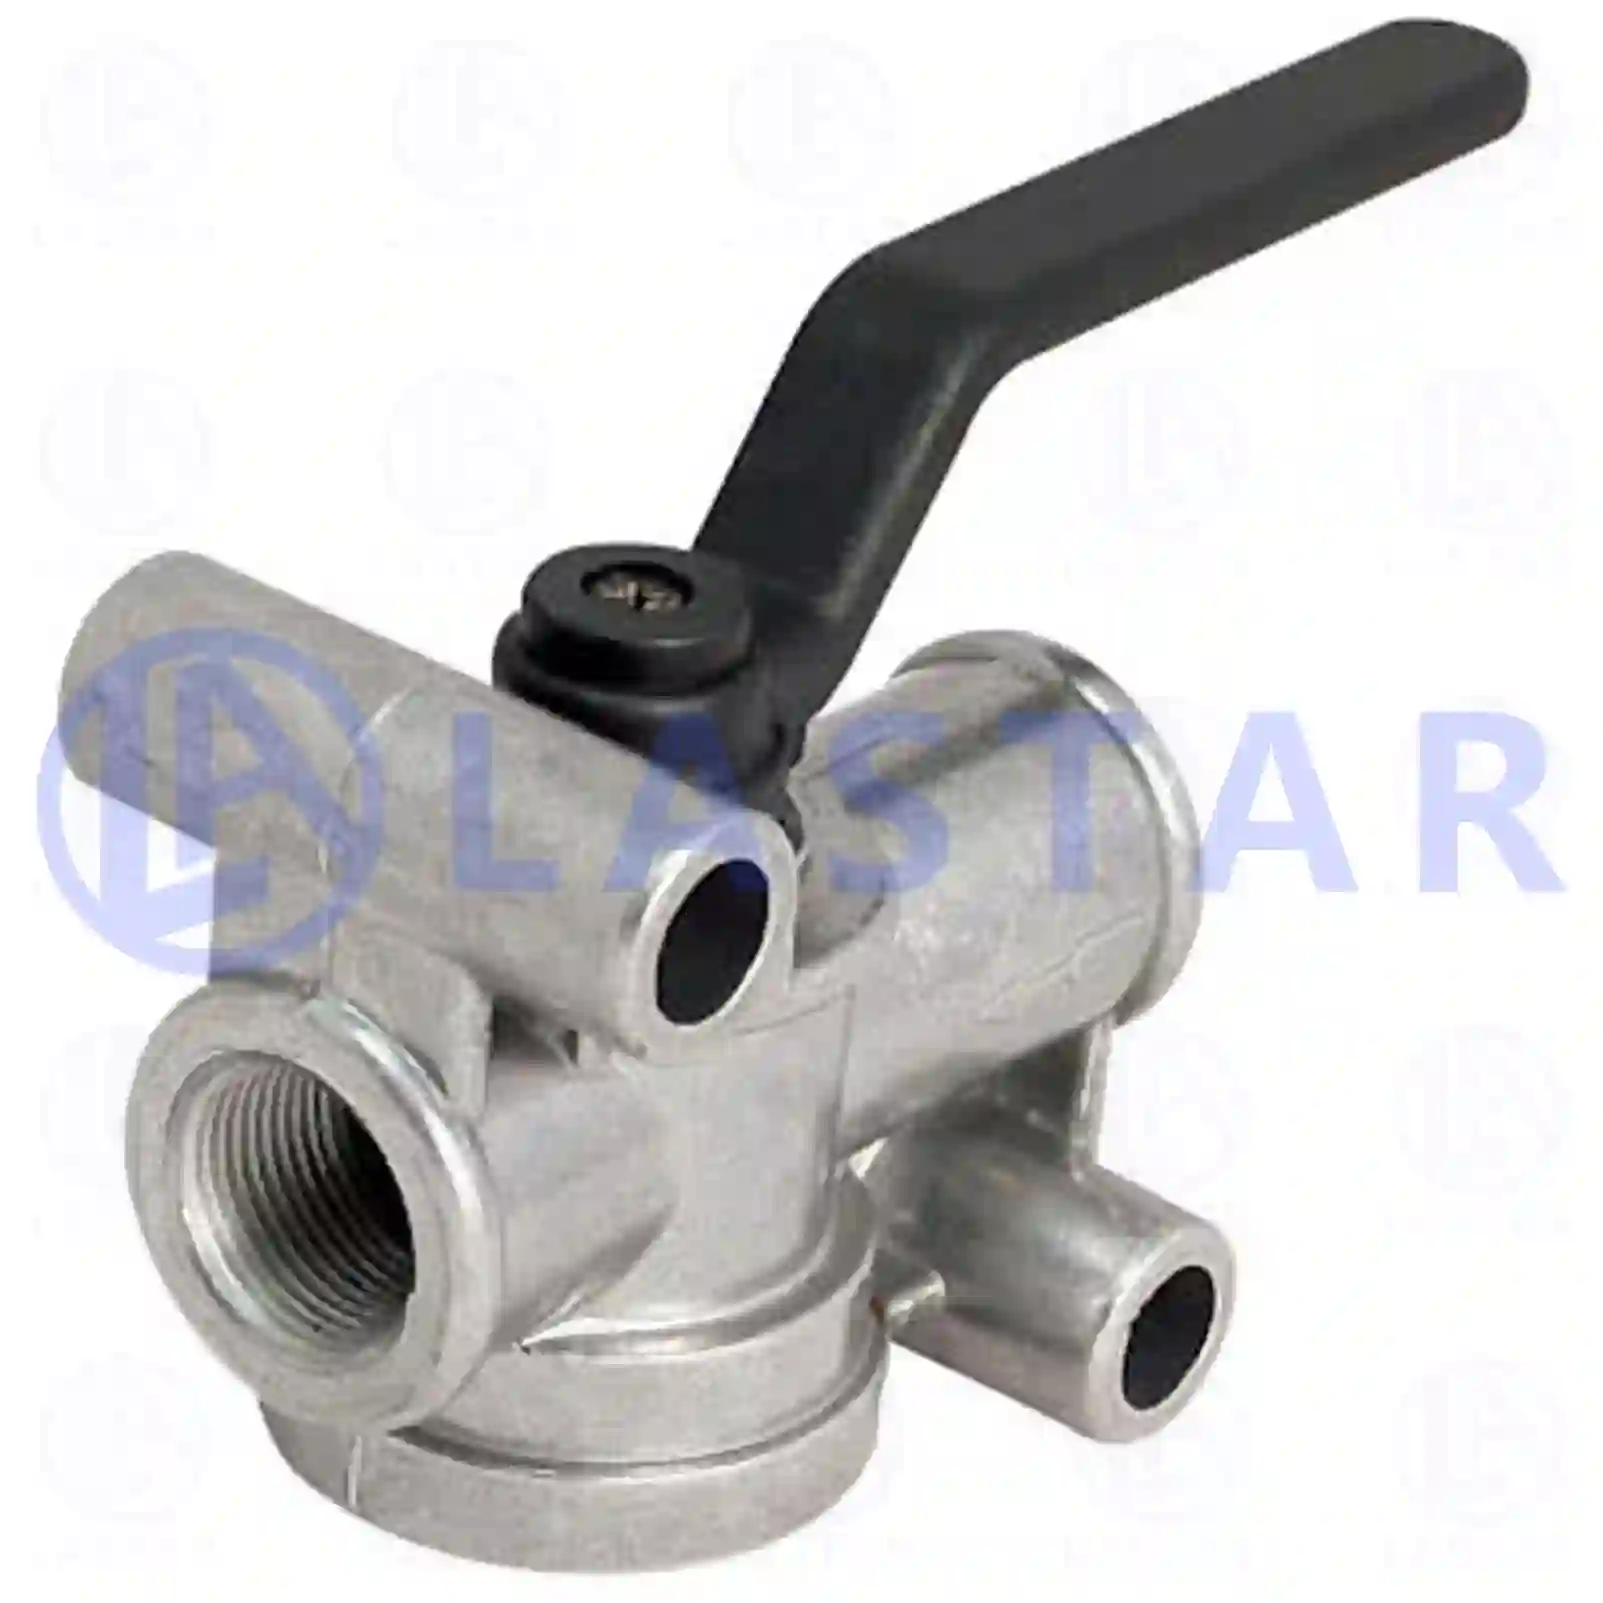  Shut off valve || Lastar Spare Part | Truck Spare Parts, Auotomotive Spare Parts